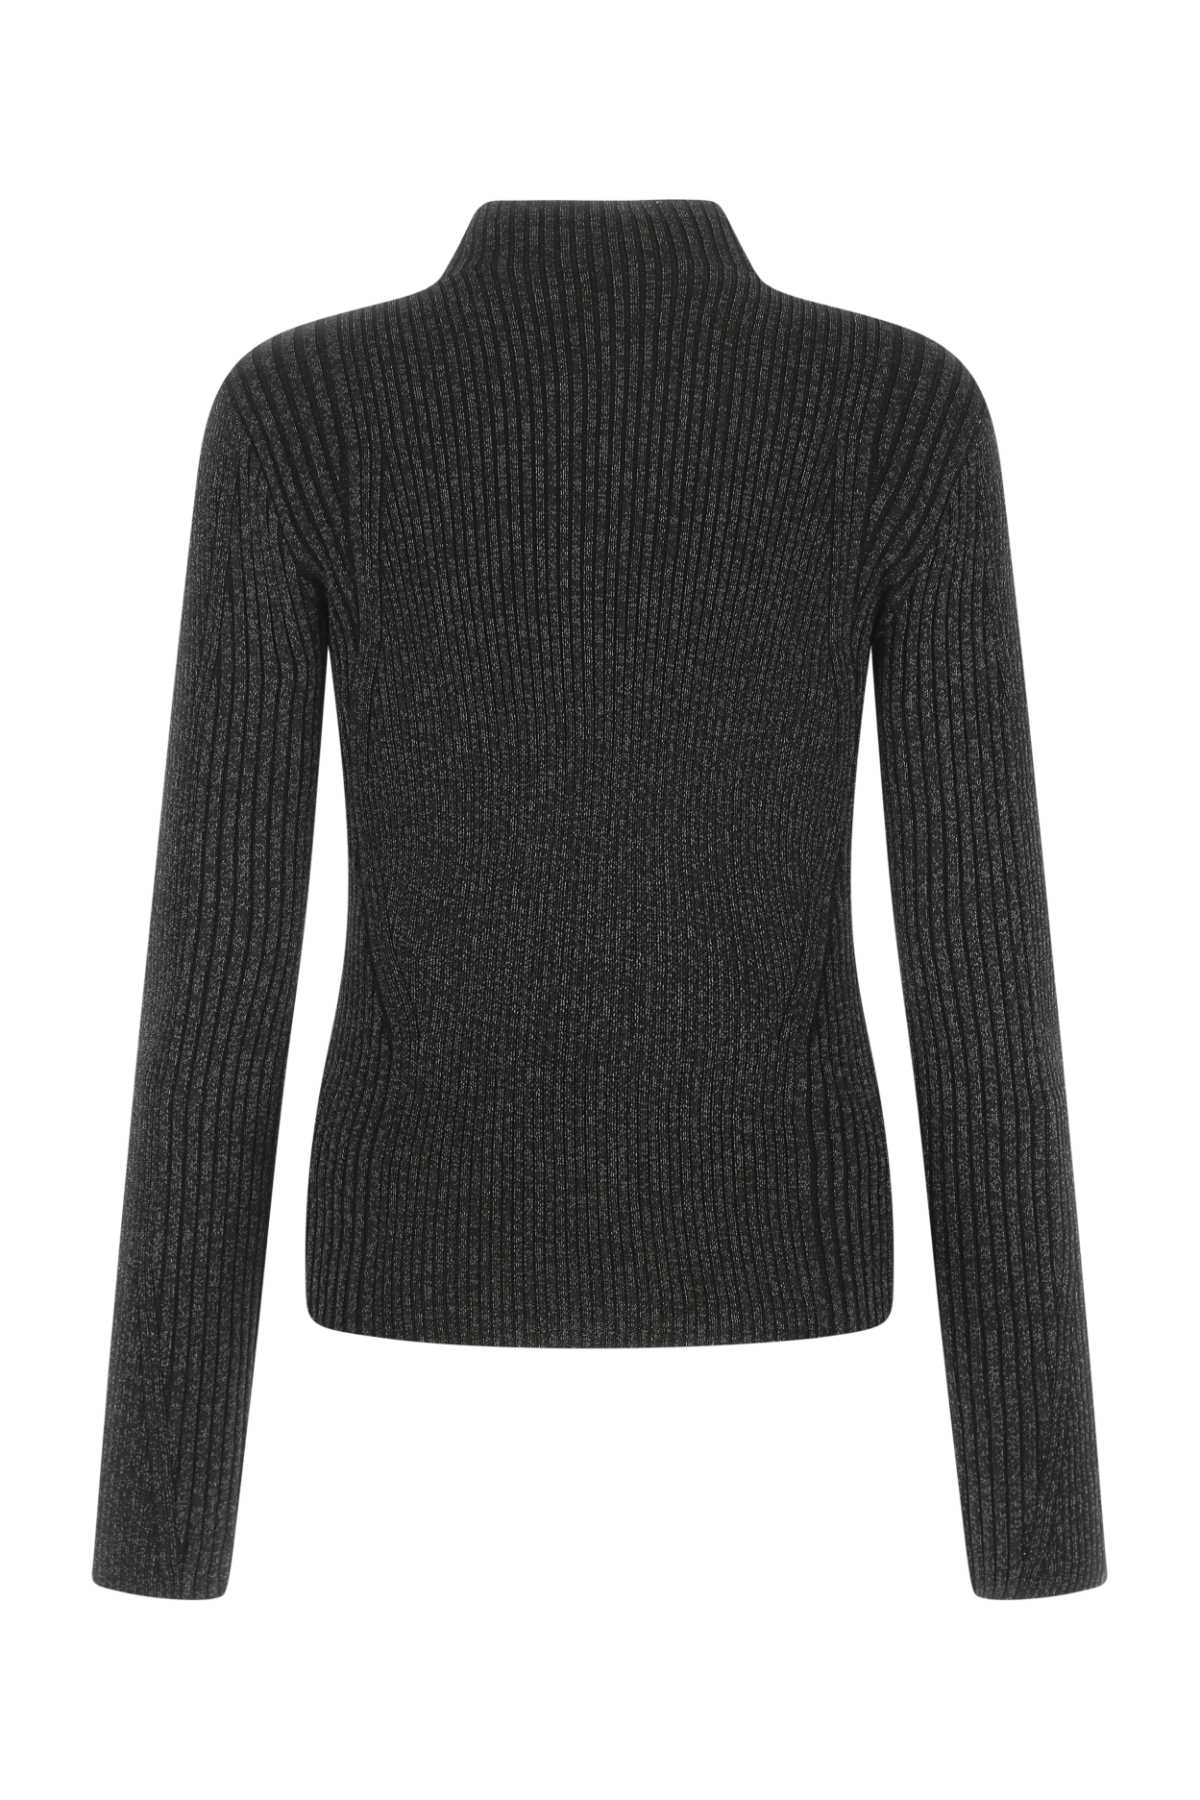 Shop Dion Lee Melange Black Polyester Blend Sweater